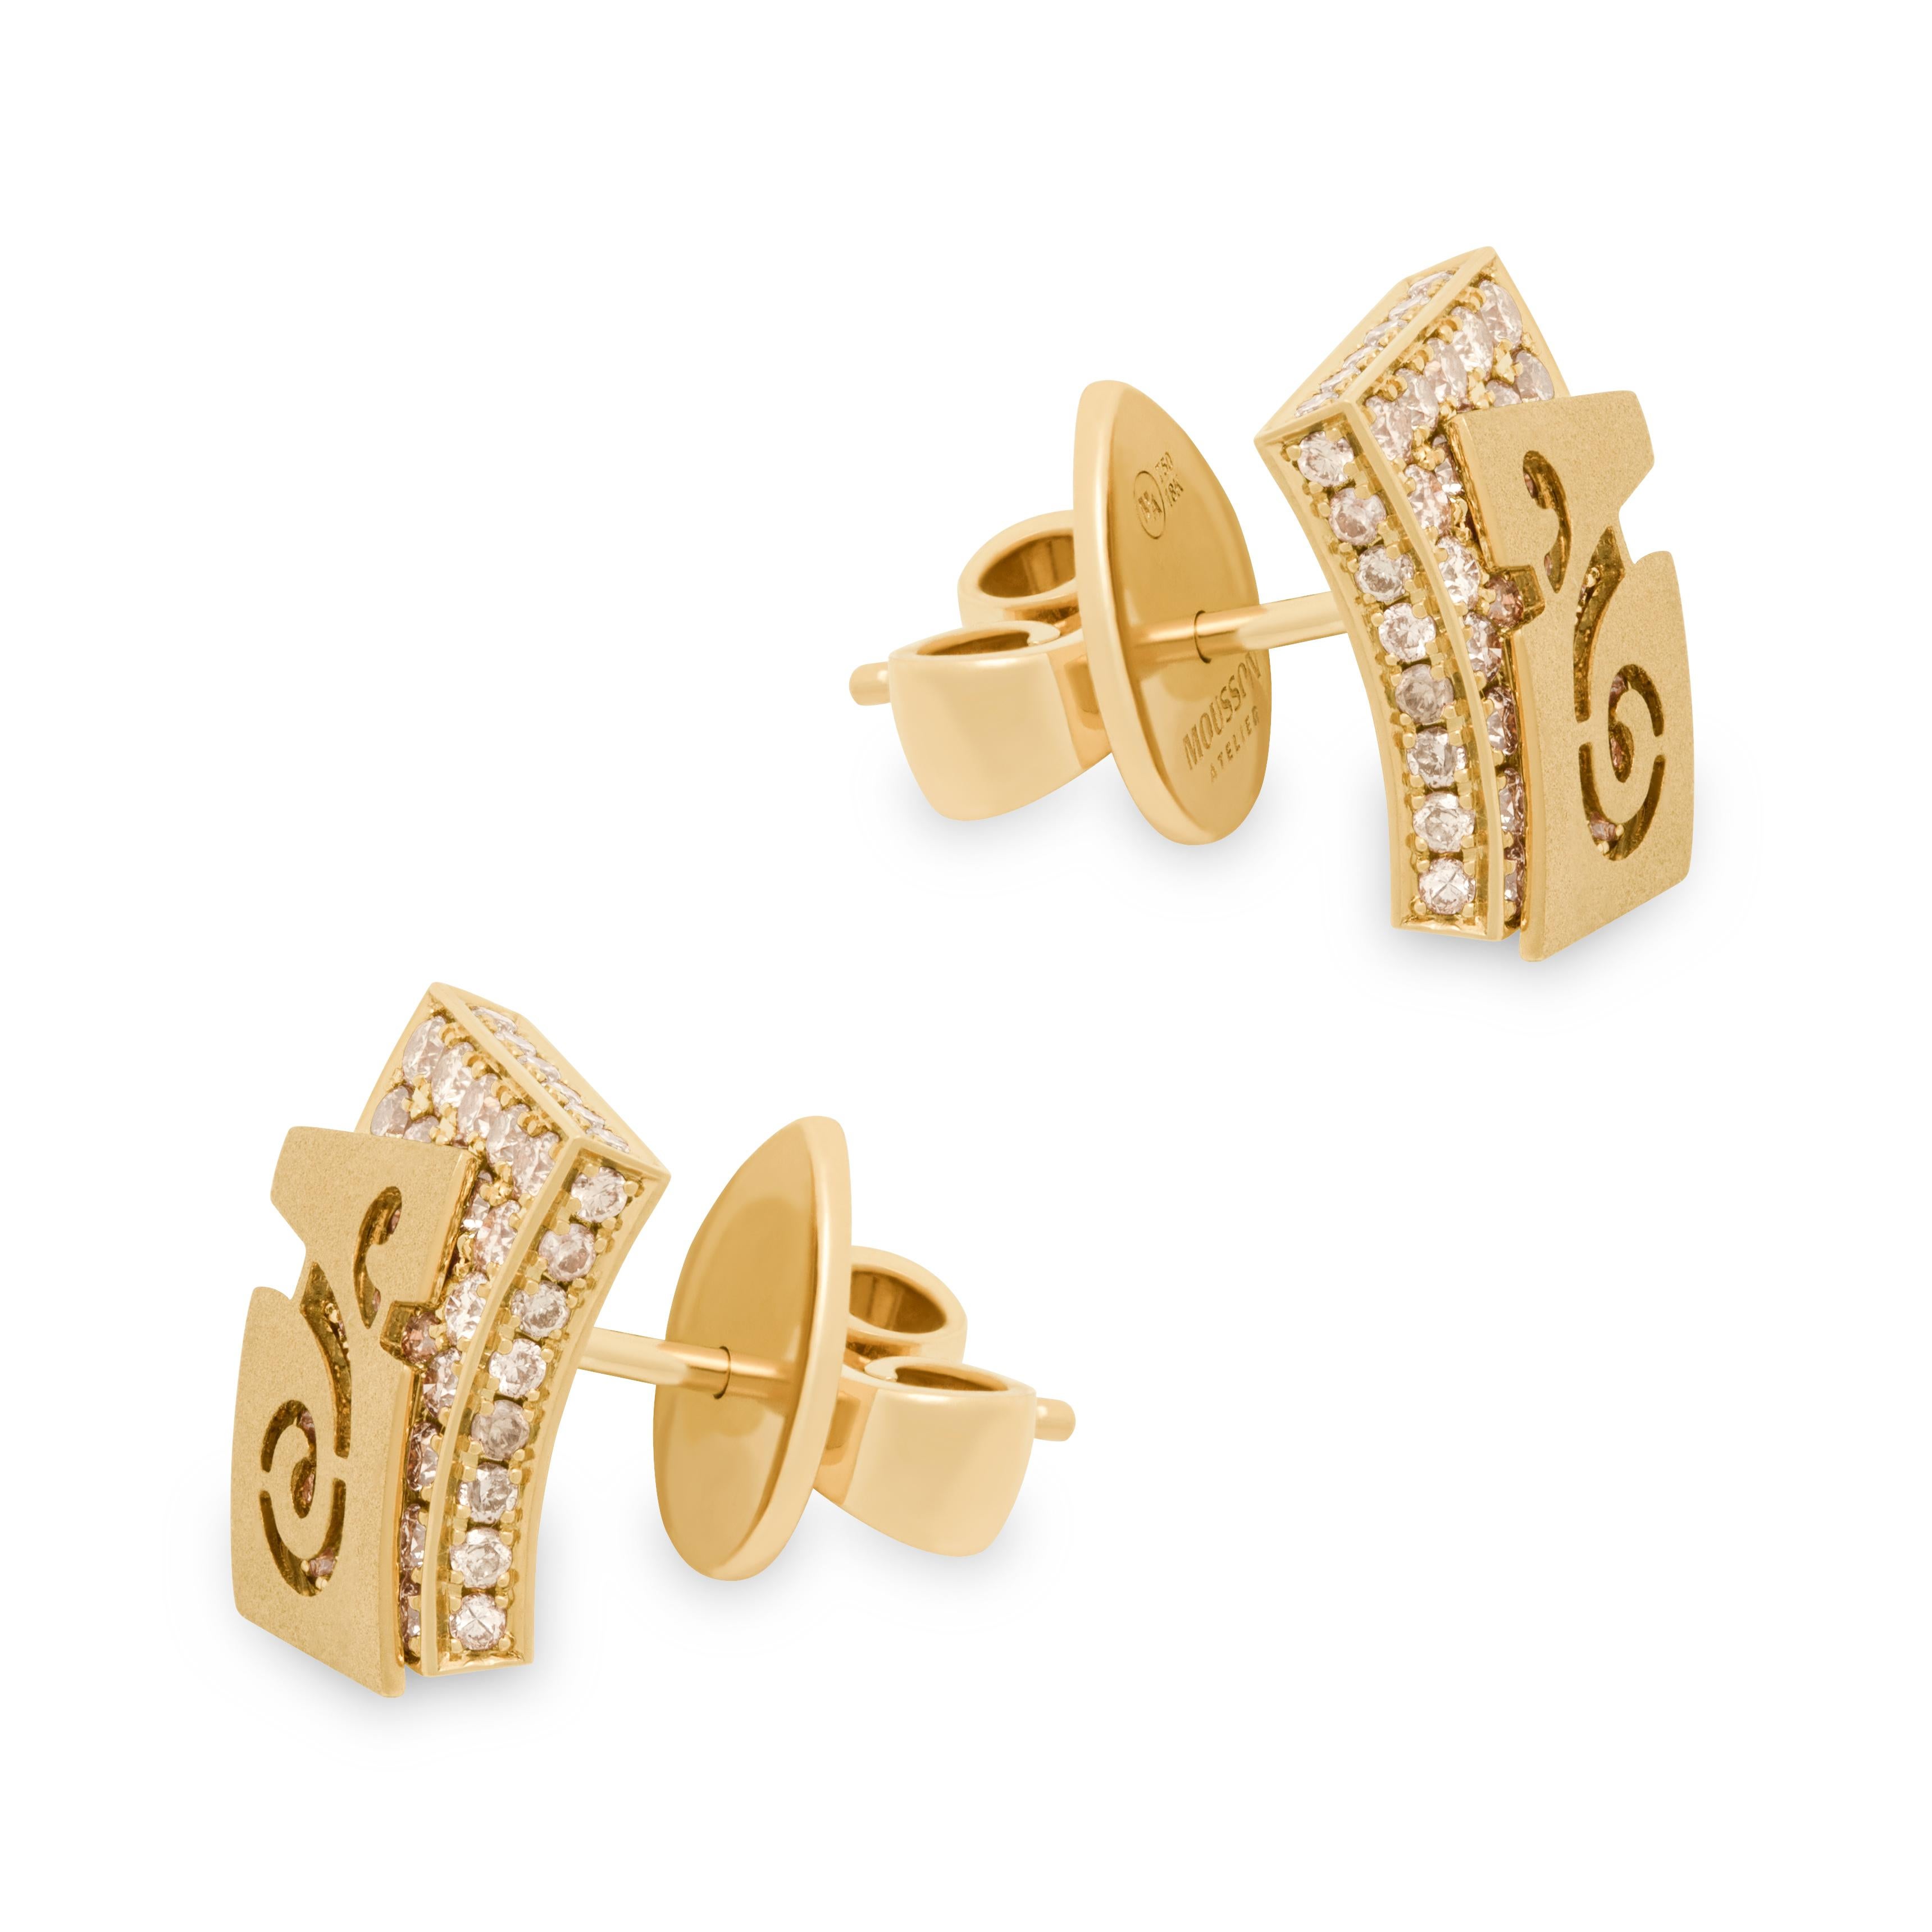 Schleifende Ohrstecker aus 18 Karat Gelbgold mit Champagner-Diamanten
Veil hat unsere Designer zu dieser Schmuckserie inspiriert. Diese Ohrringe zum Beispiel scheinen zwei Schichten zu haben. Die erste Schicht ist ein 